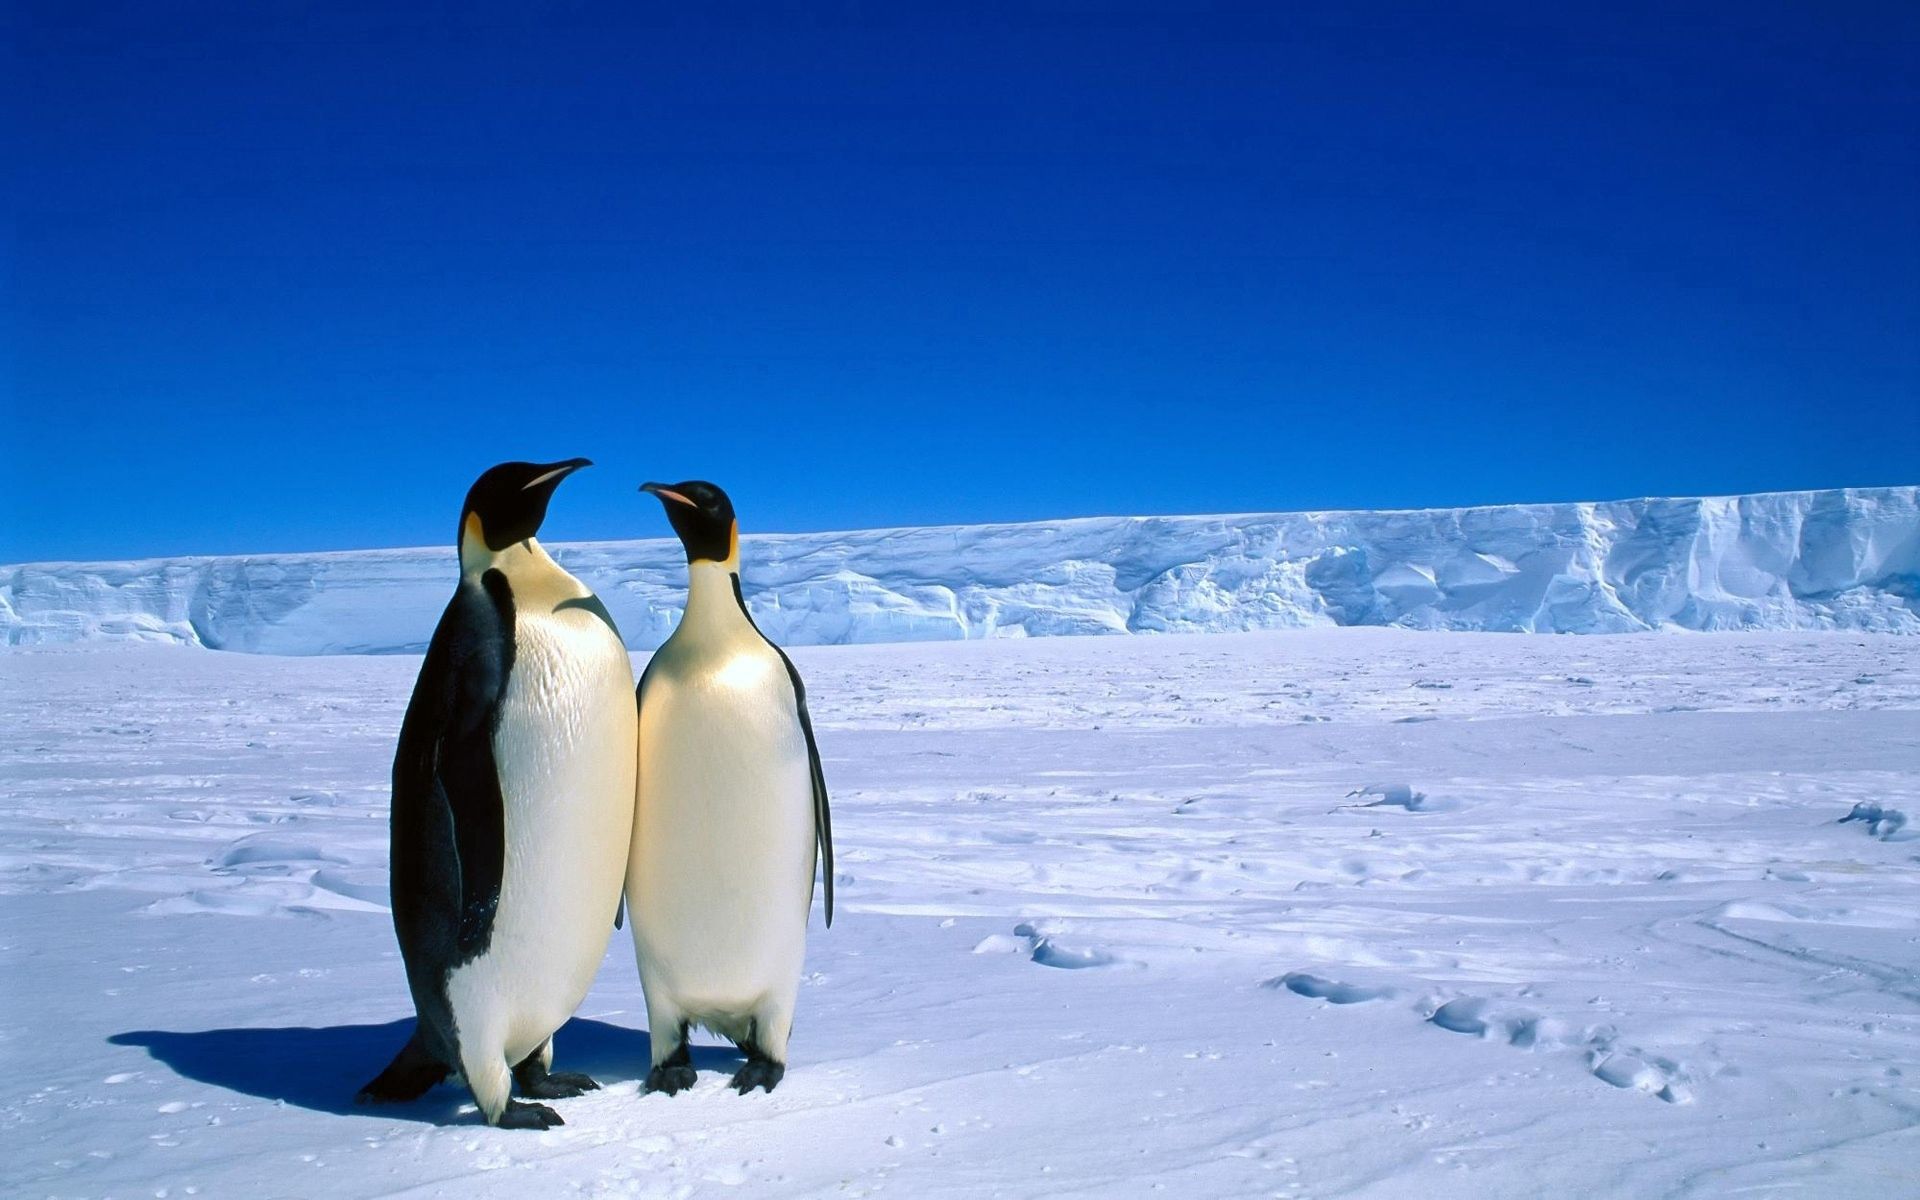 Популярные заставки и фоны Антарктида на компьютер